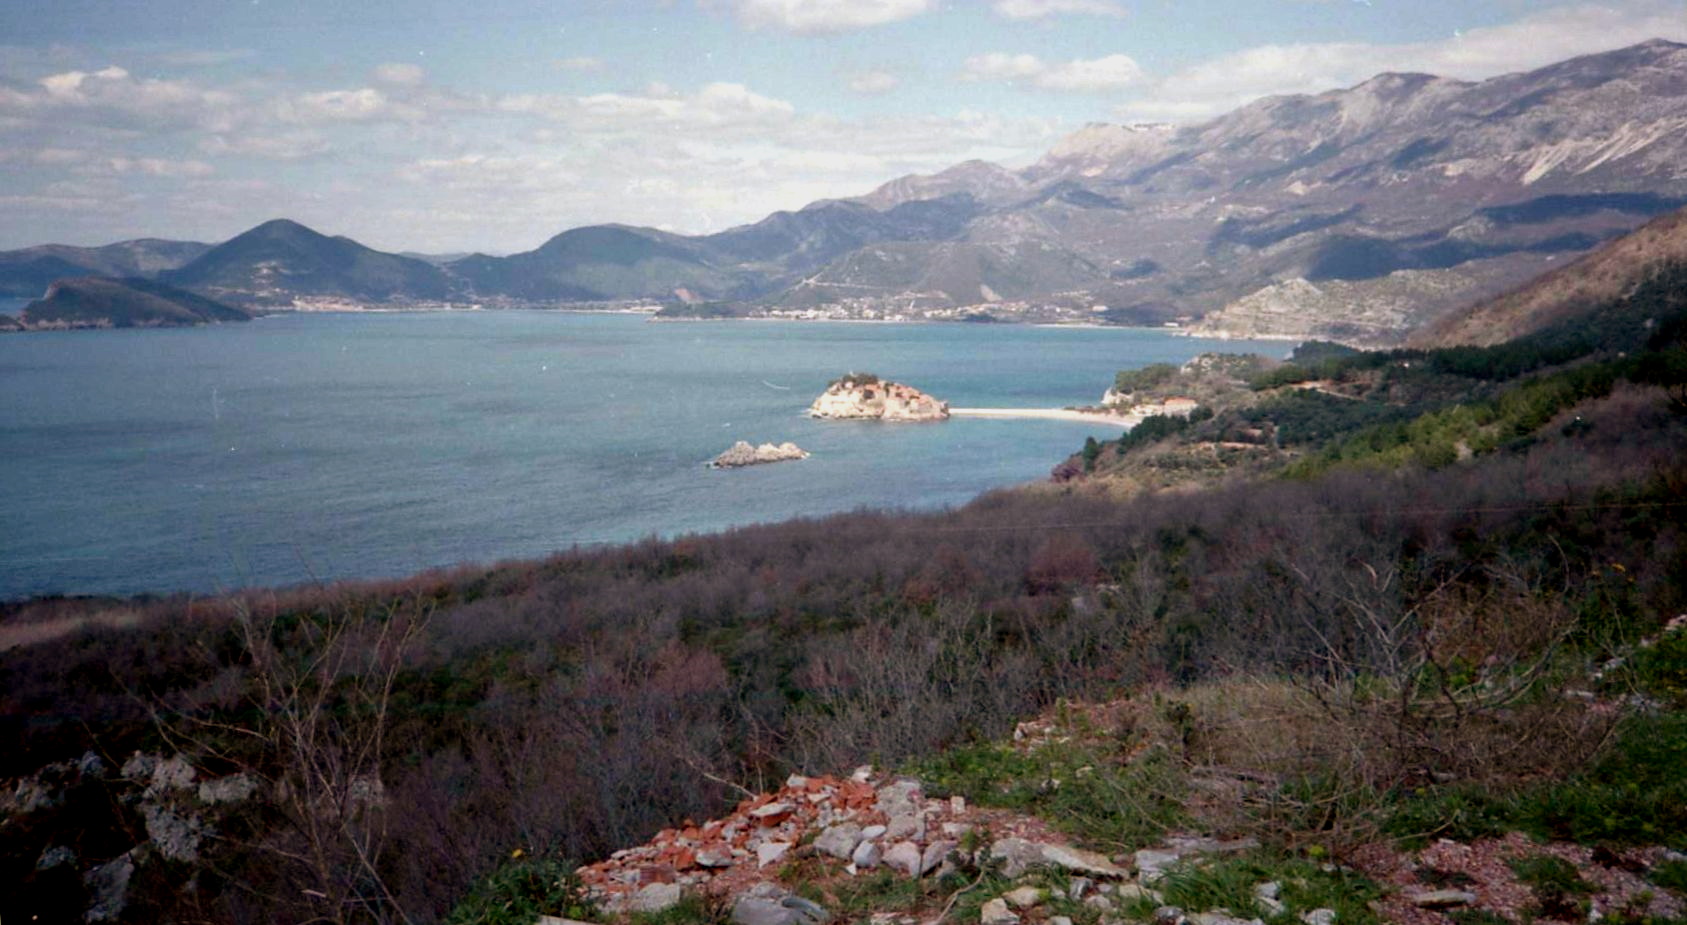 Dalmatian ( Adriatic ) Coast of Croatia